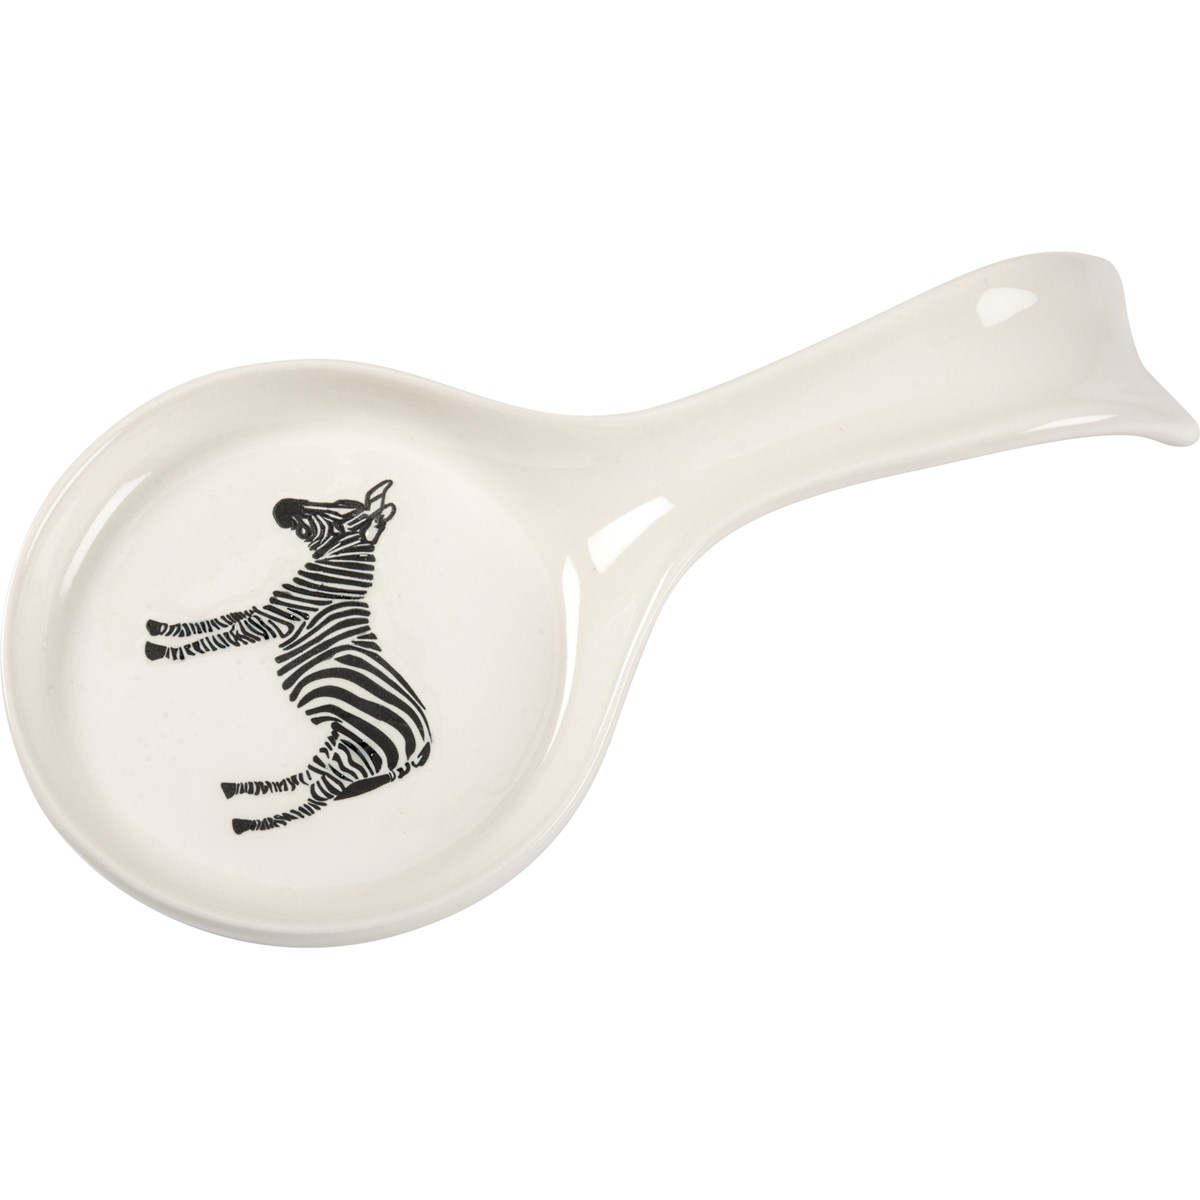 Spoon Rest - Zebra -  9" x 4.50" x 1" - Stoneware